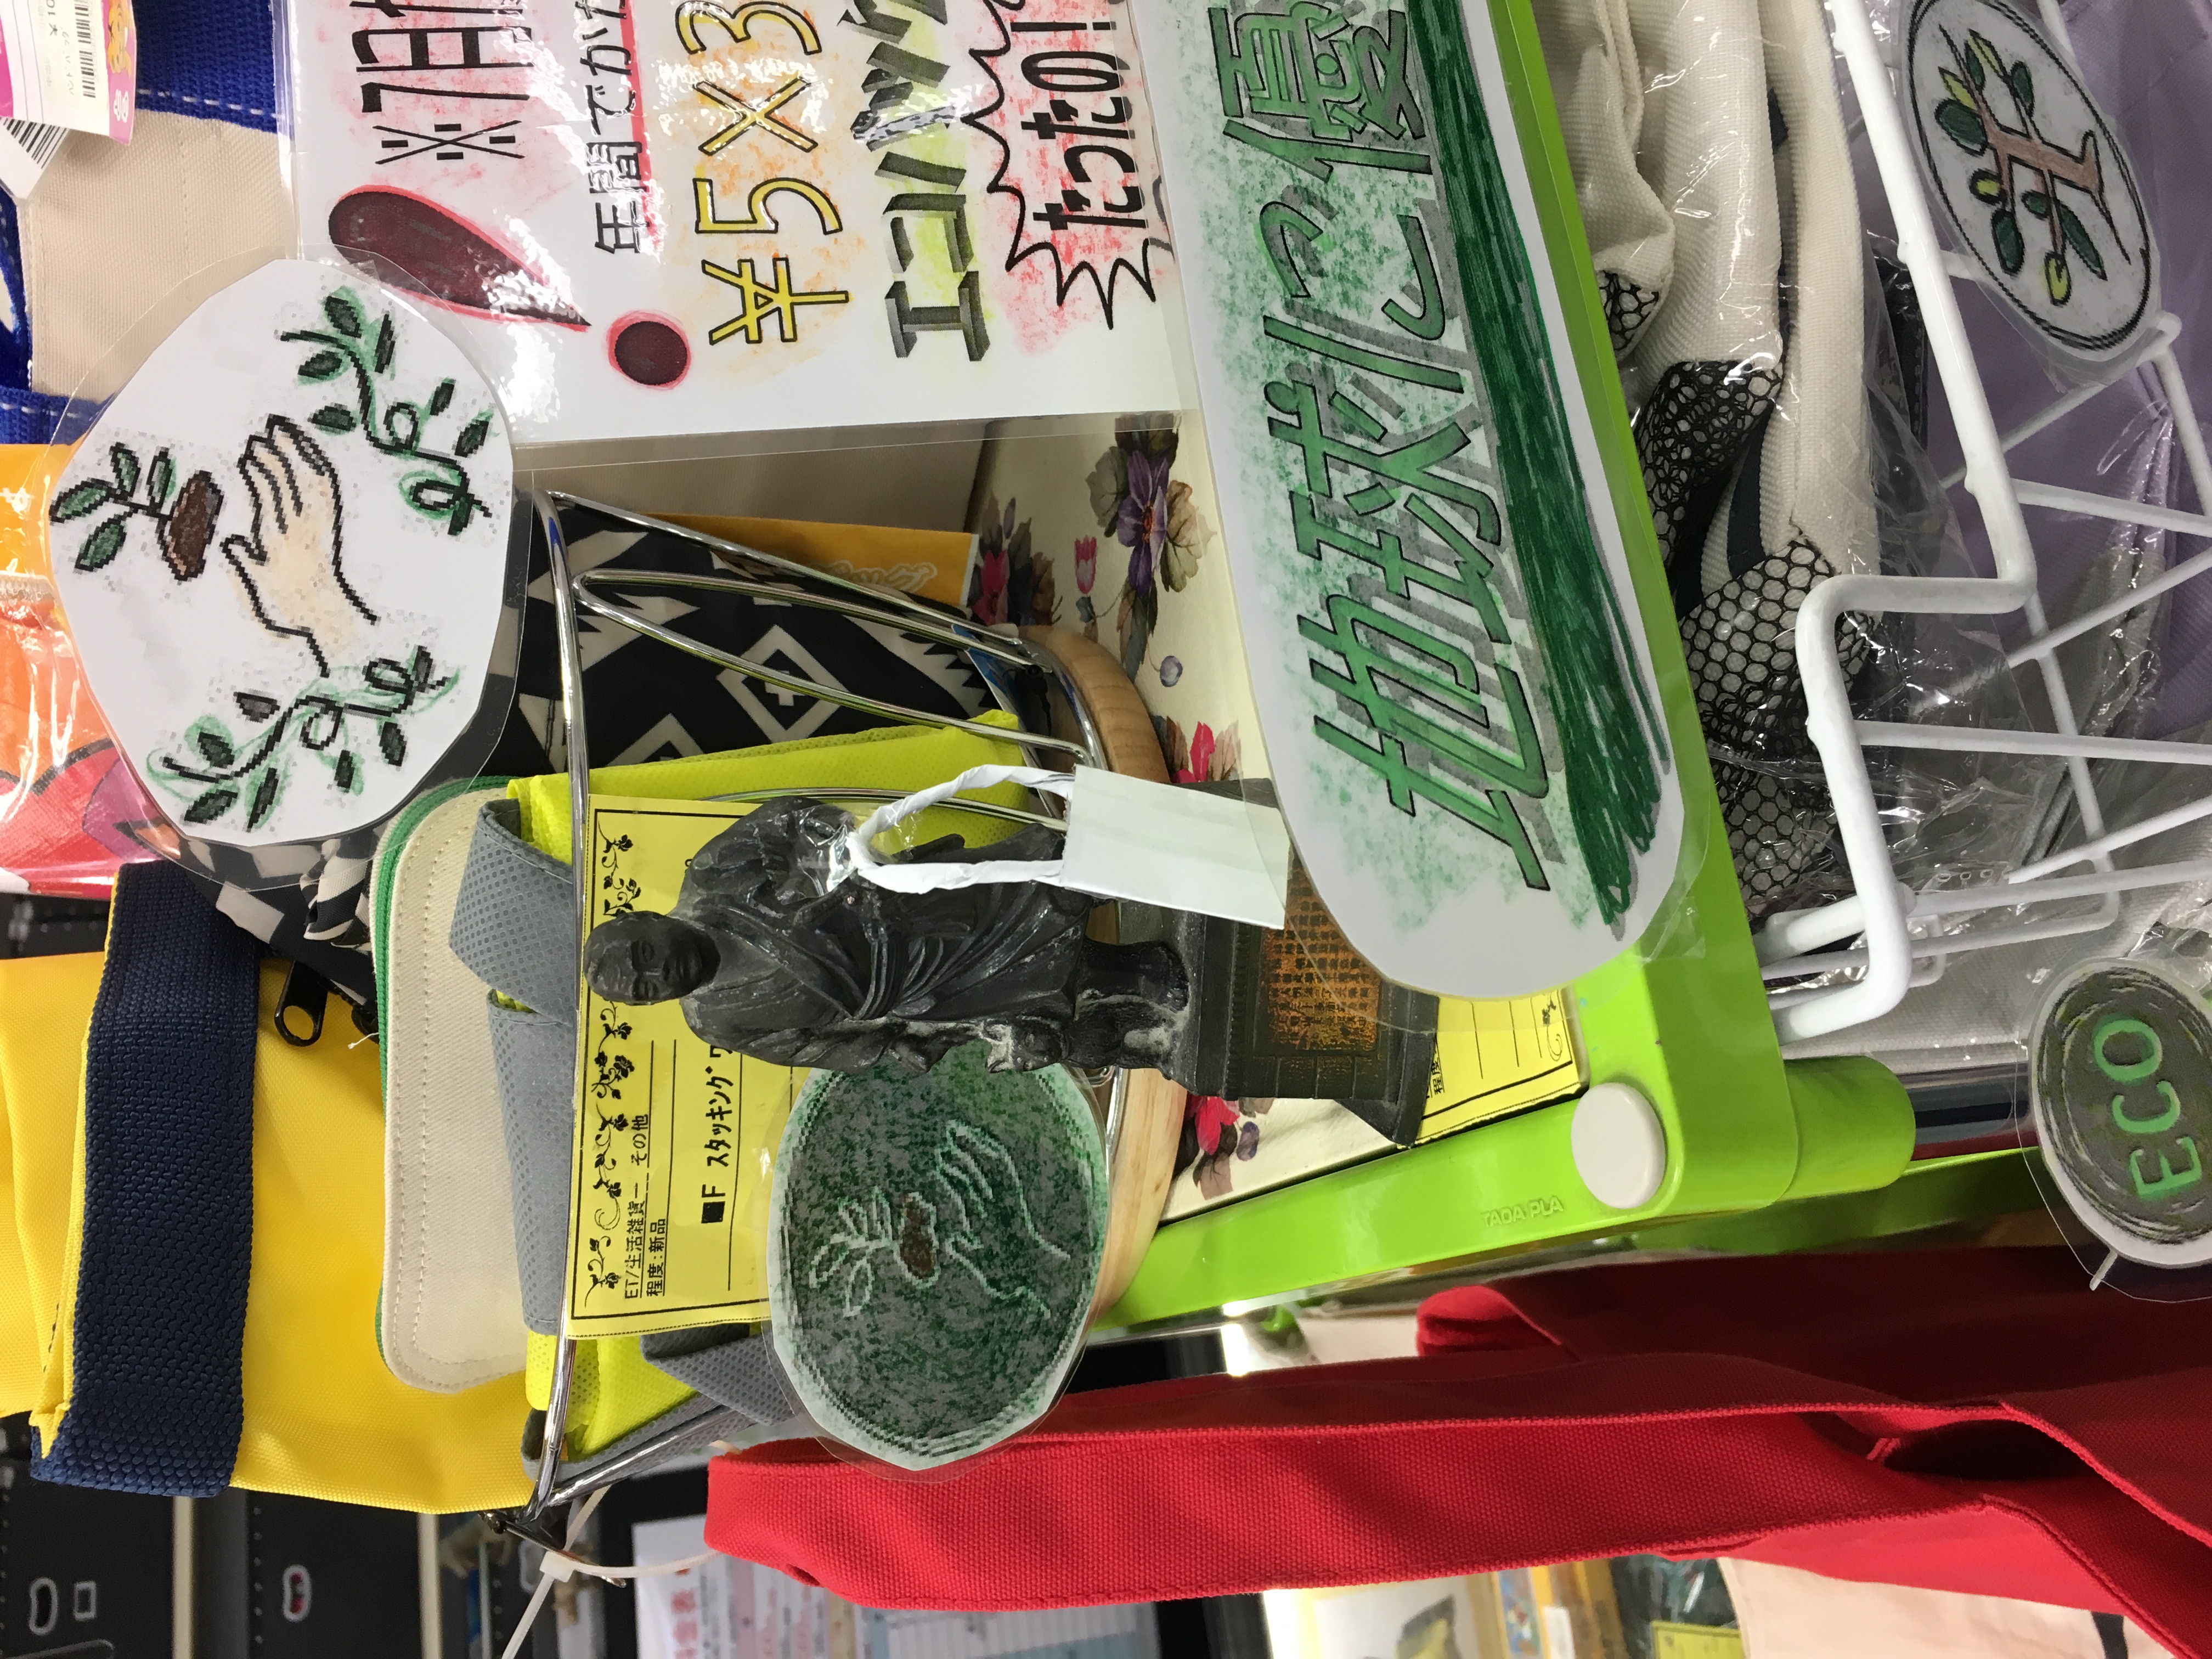 ﾘｻｲｸﾙｼｮｯﾌﾟ　ジャングル・ジャングル岸和田店　エコバッグ大量！衣料品プライスダウン！お買い得(*´ω｀*)